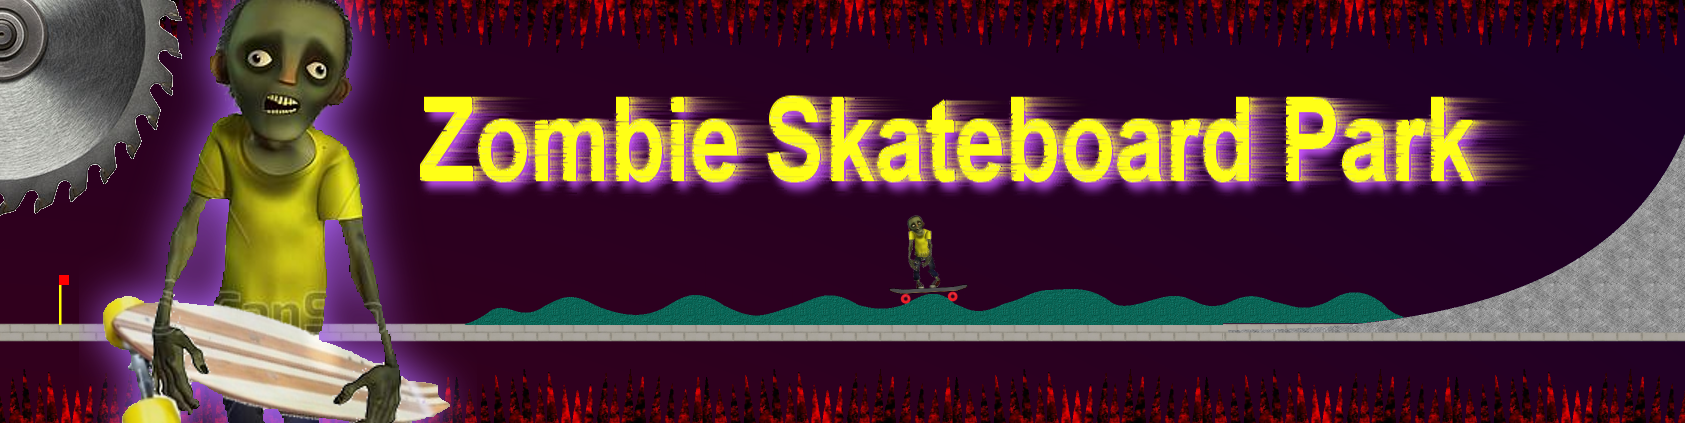 Zombie Skateboard Park